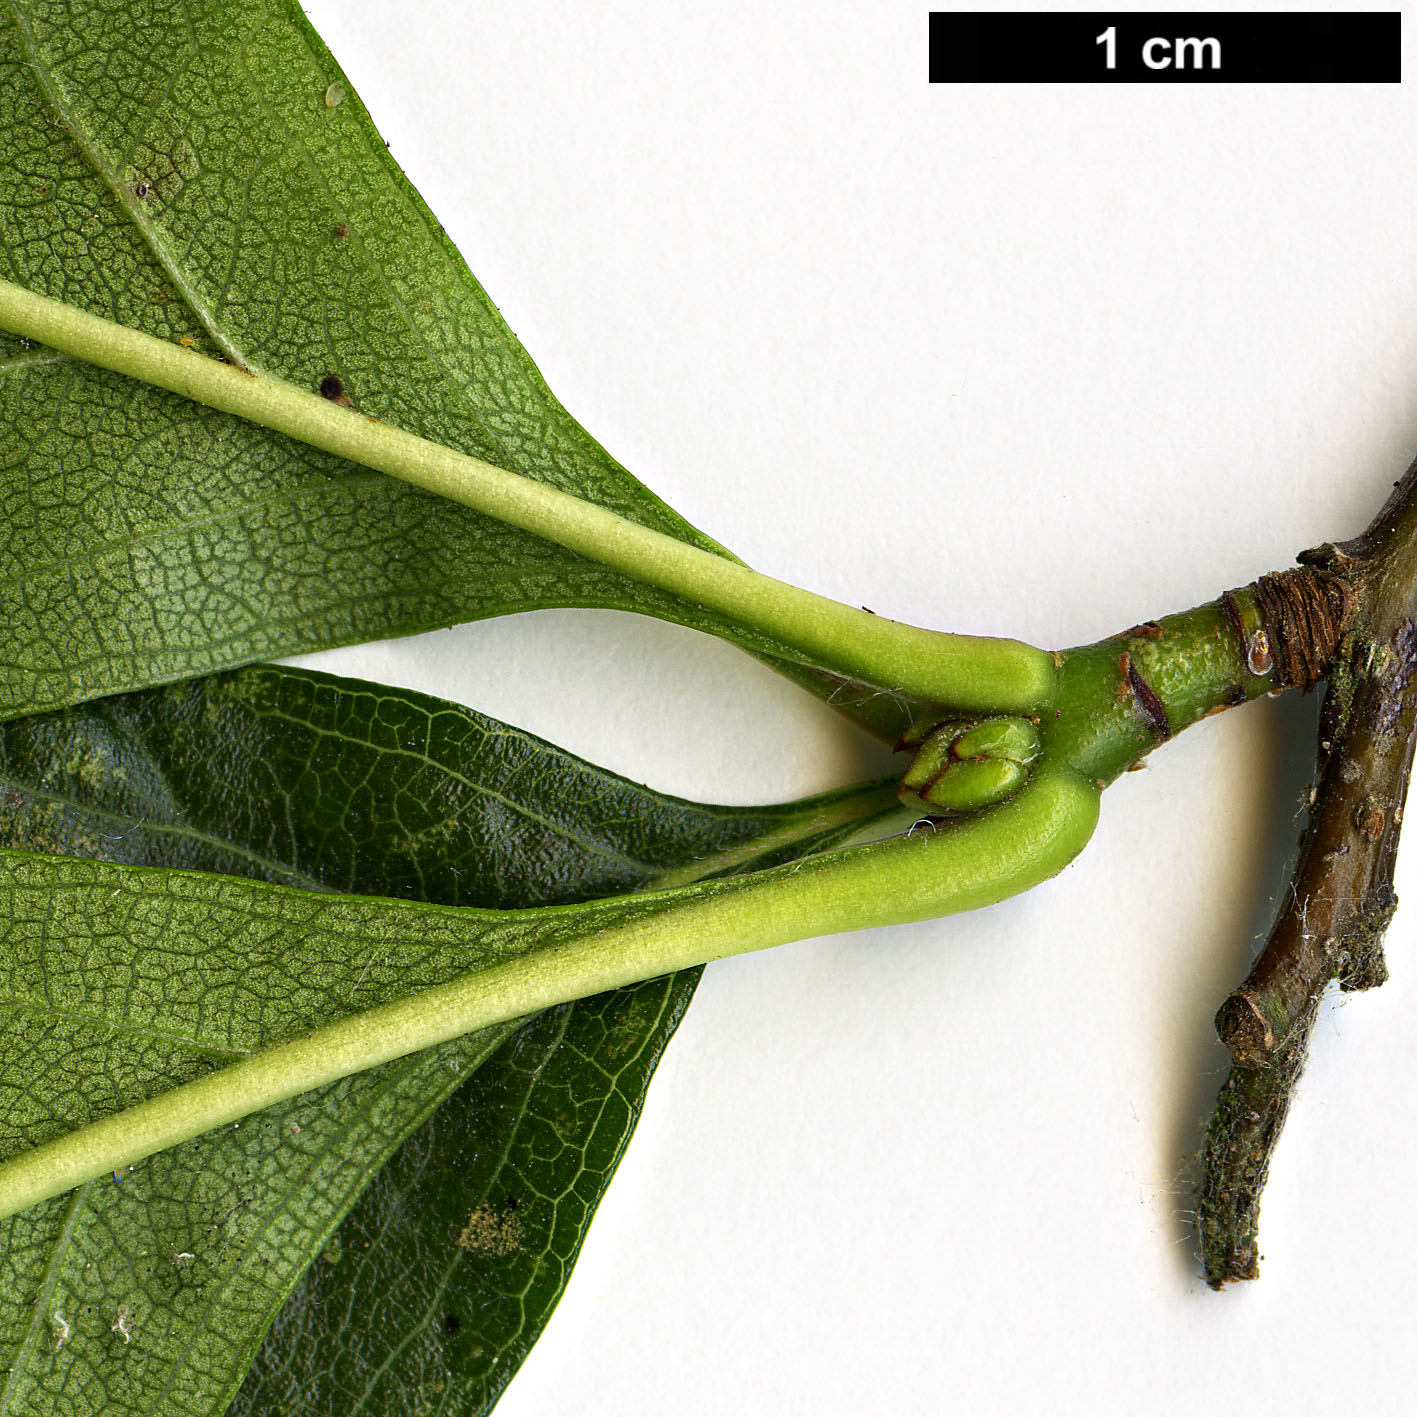 High resolution image: Family: Rosaceae - Genus: Crataegus - Taxon: persimilis - SpeciesSub: 'Splendens'